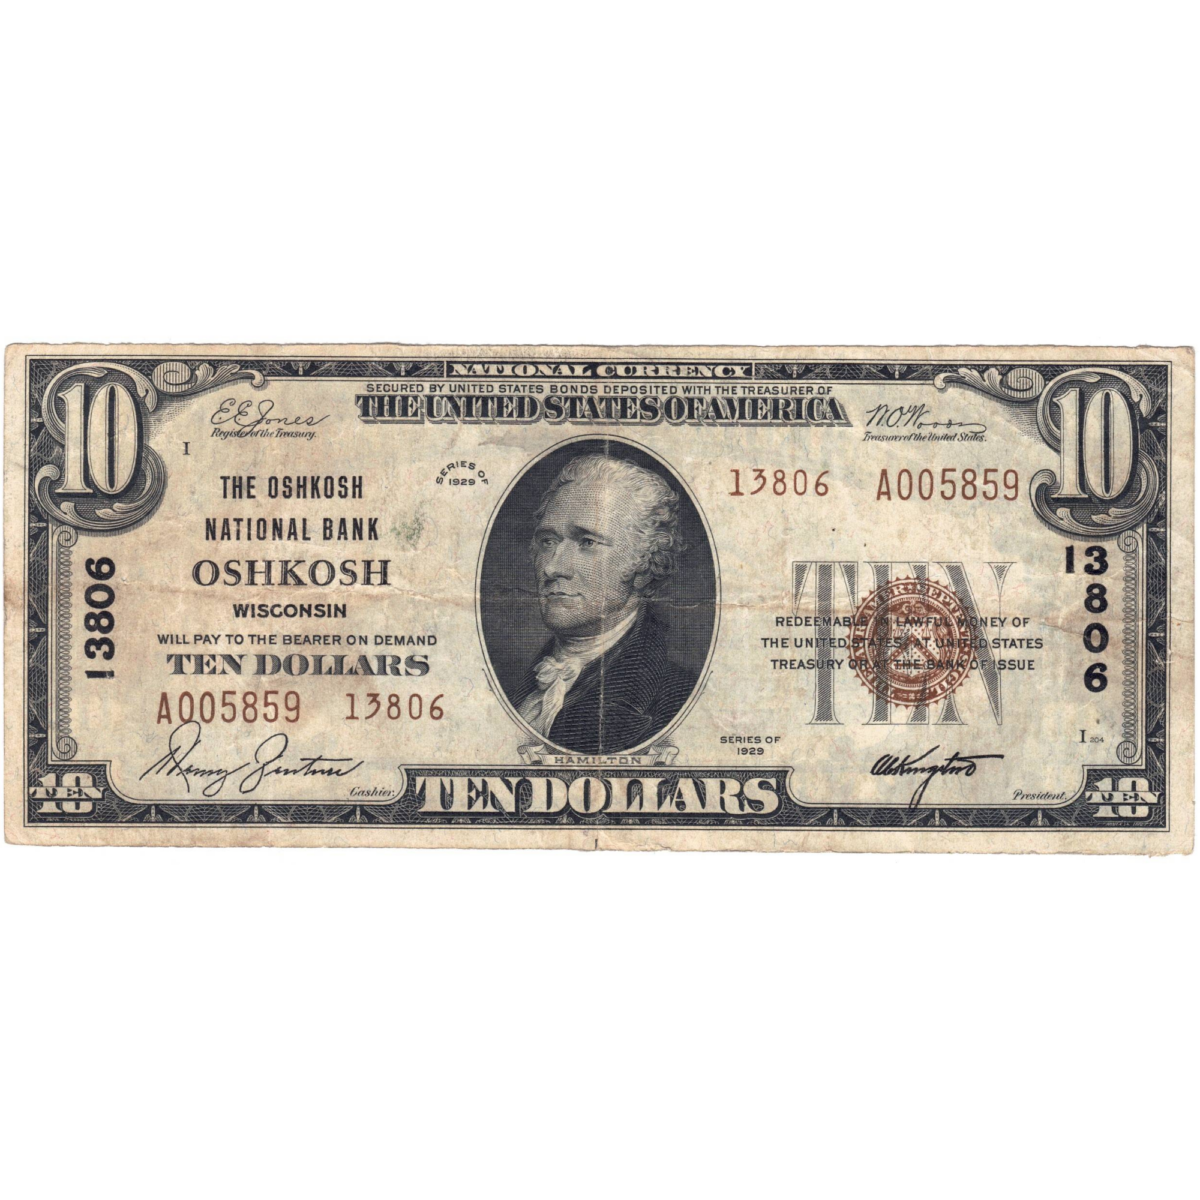 USA 10 dollars 1929 avers 071 oshkosh